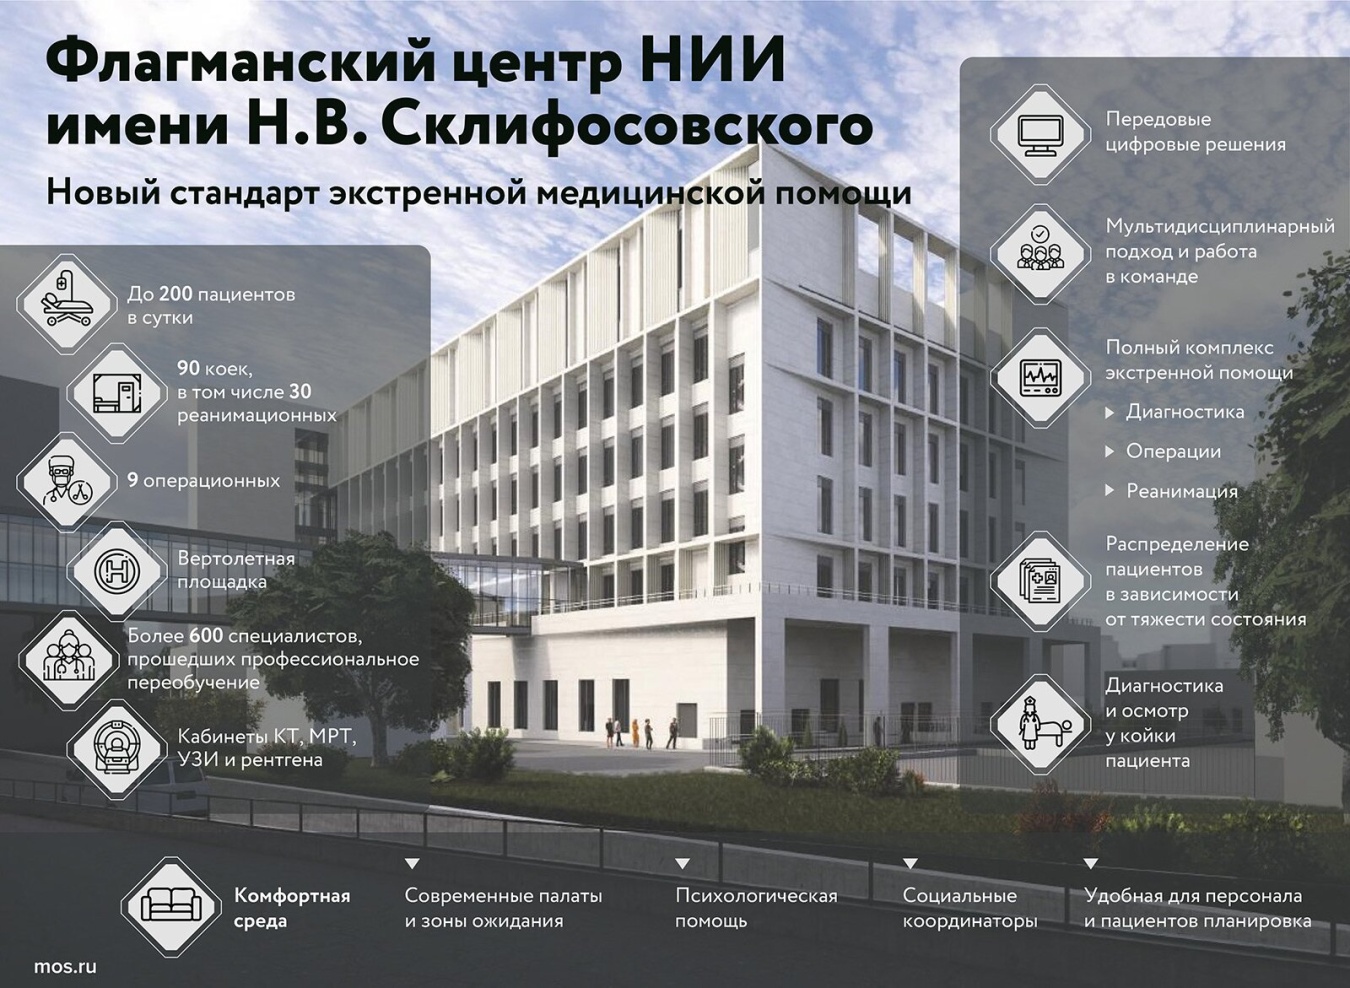 Открылся флагманский центр НИИ скорой помощи имени Н.В. Склифосовского